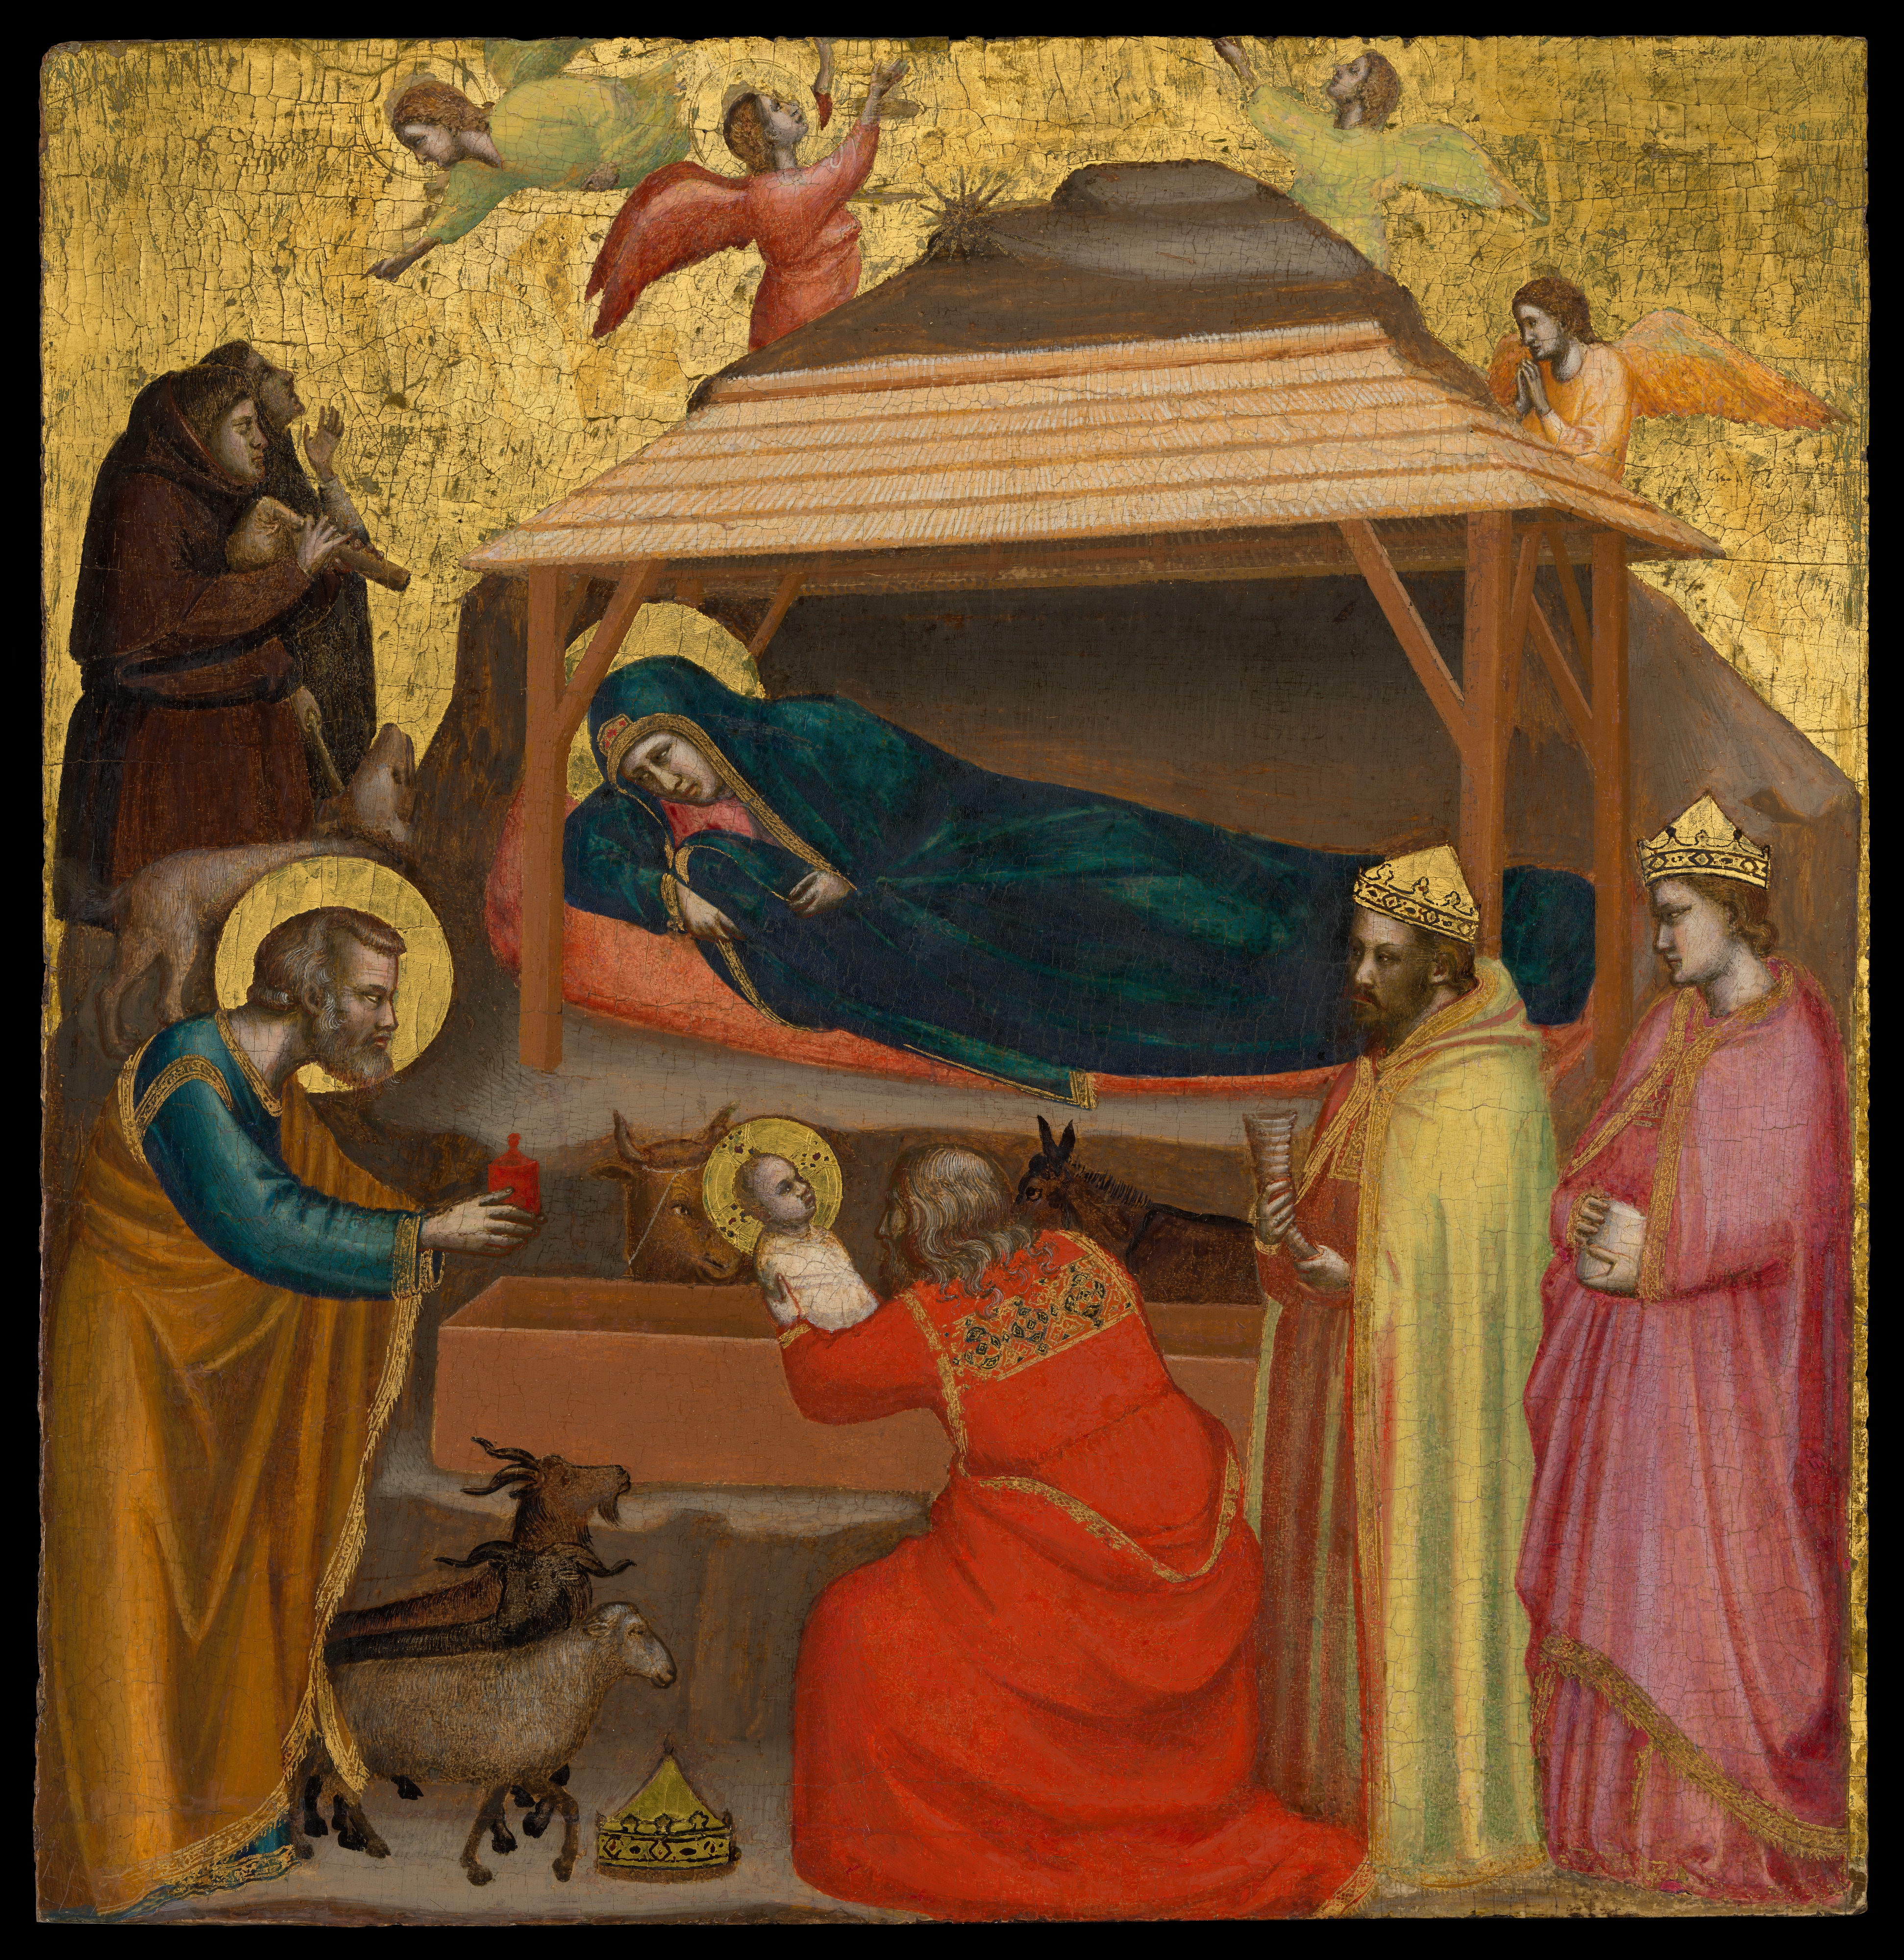 Giotto di Bondone, The Adoration of the Magi